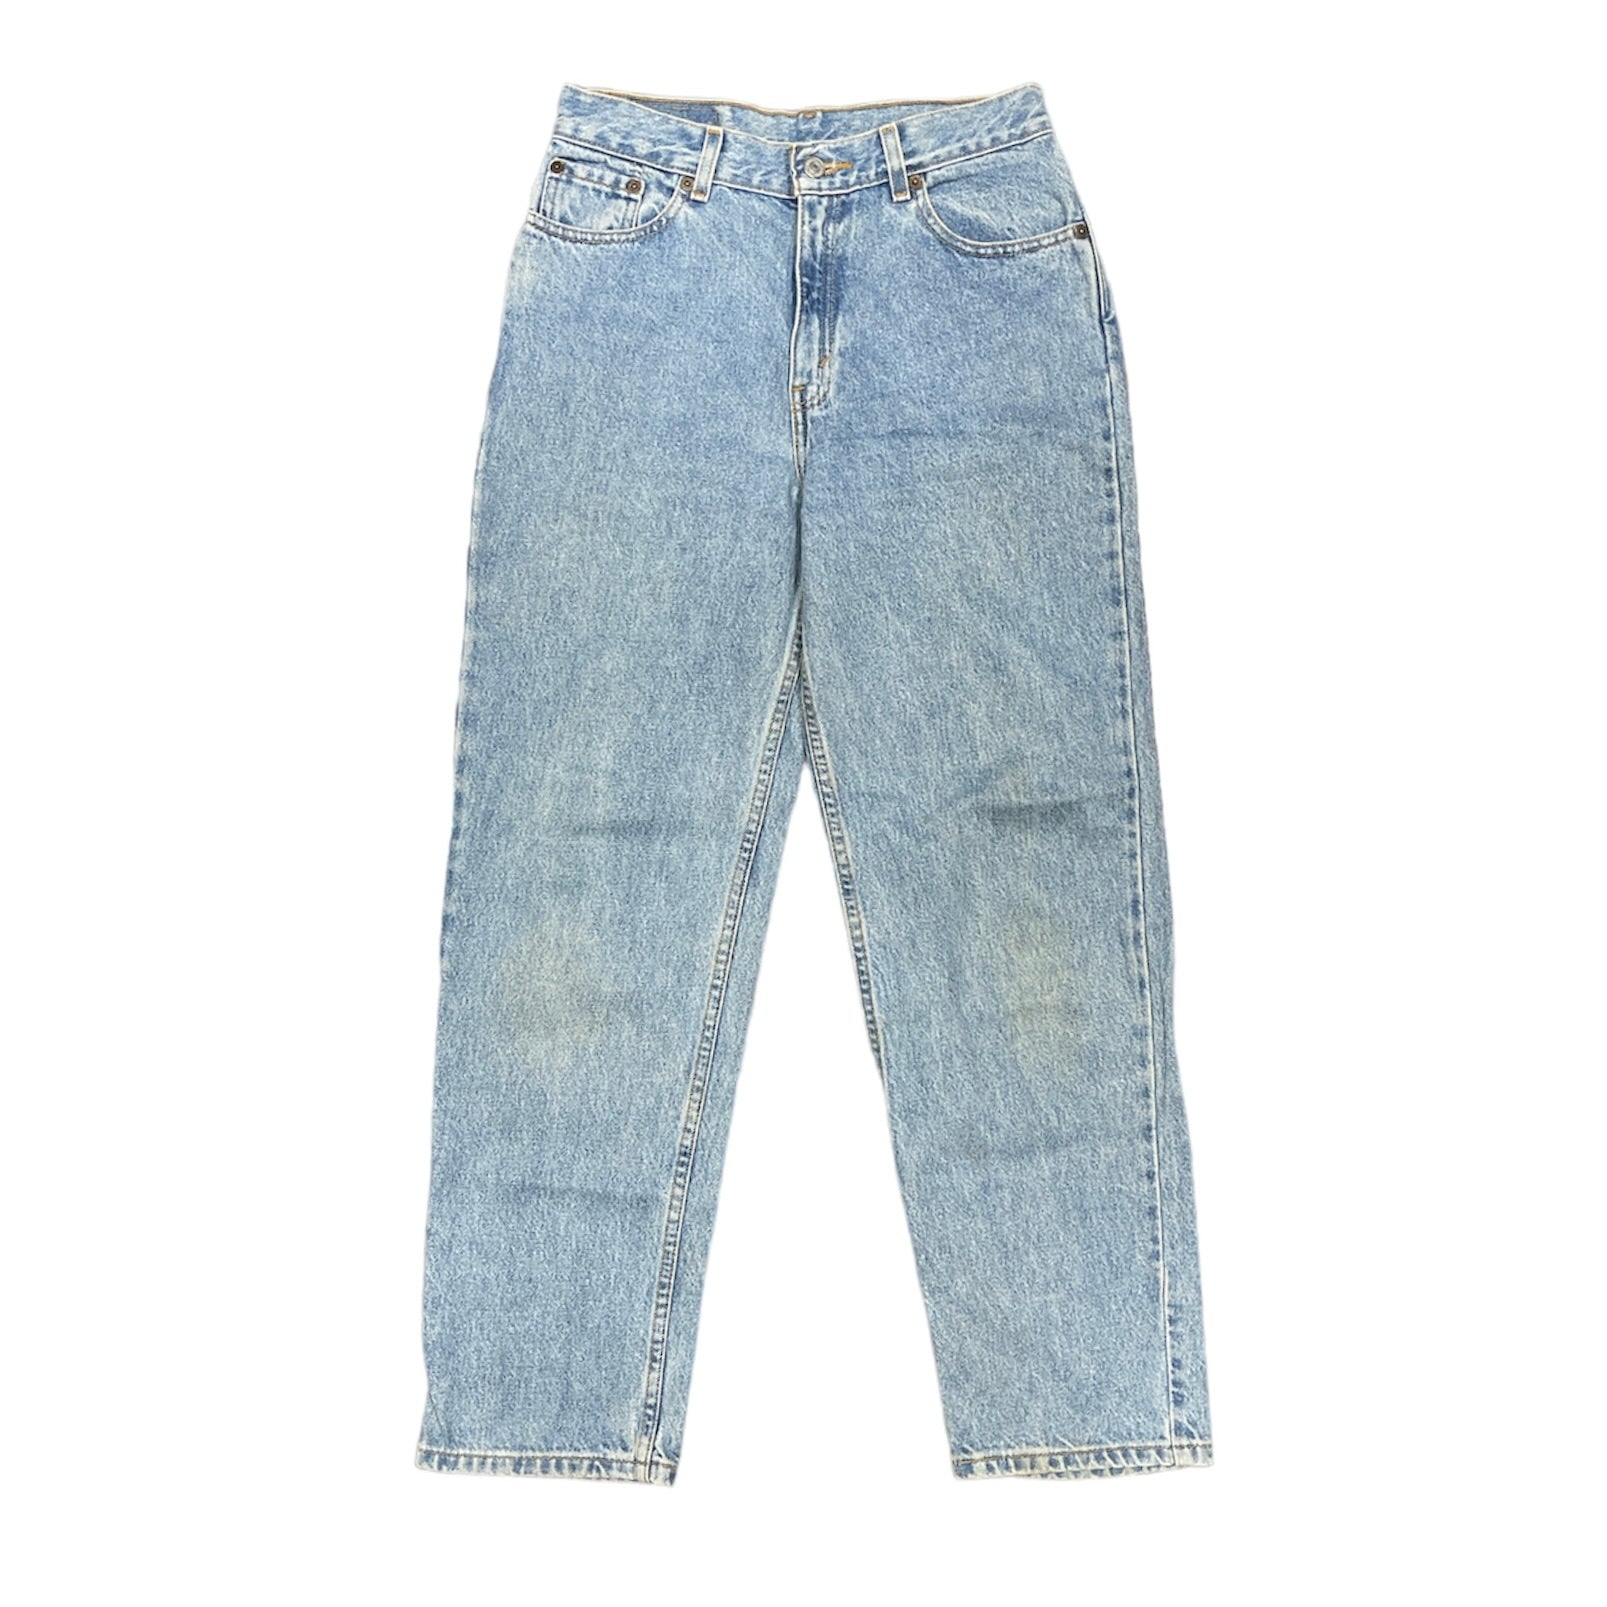 Vintage Levis 550 Light Blue Jeans